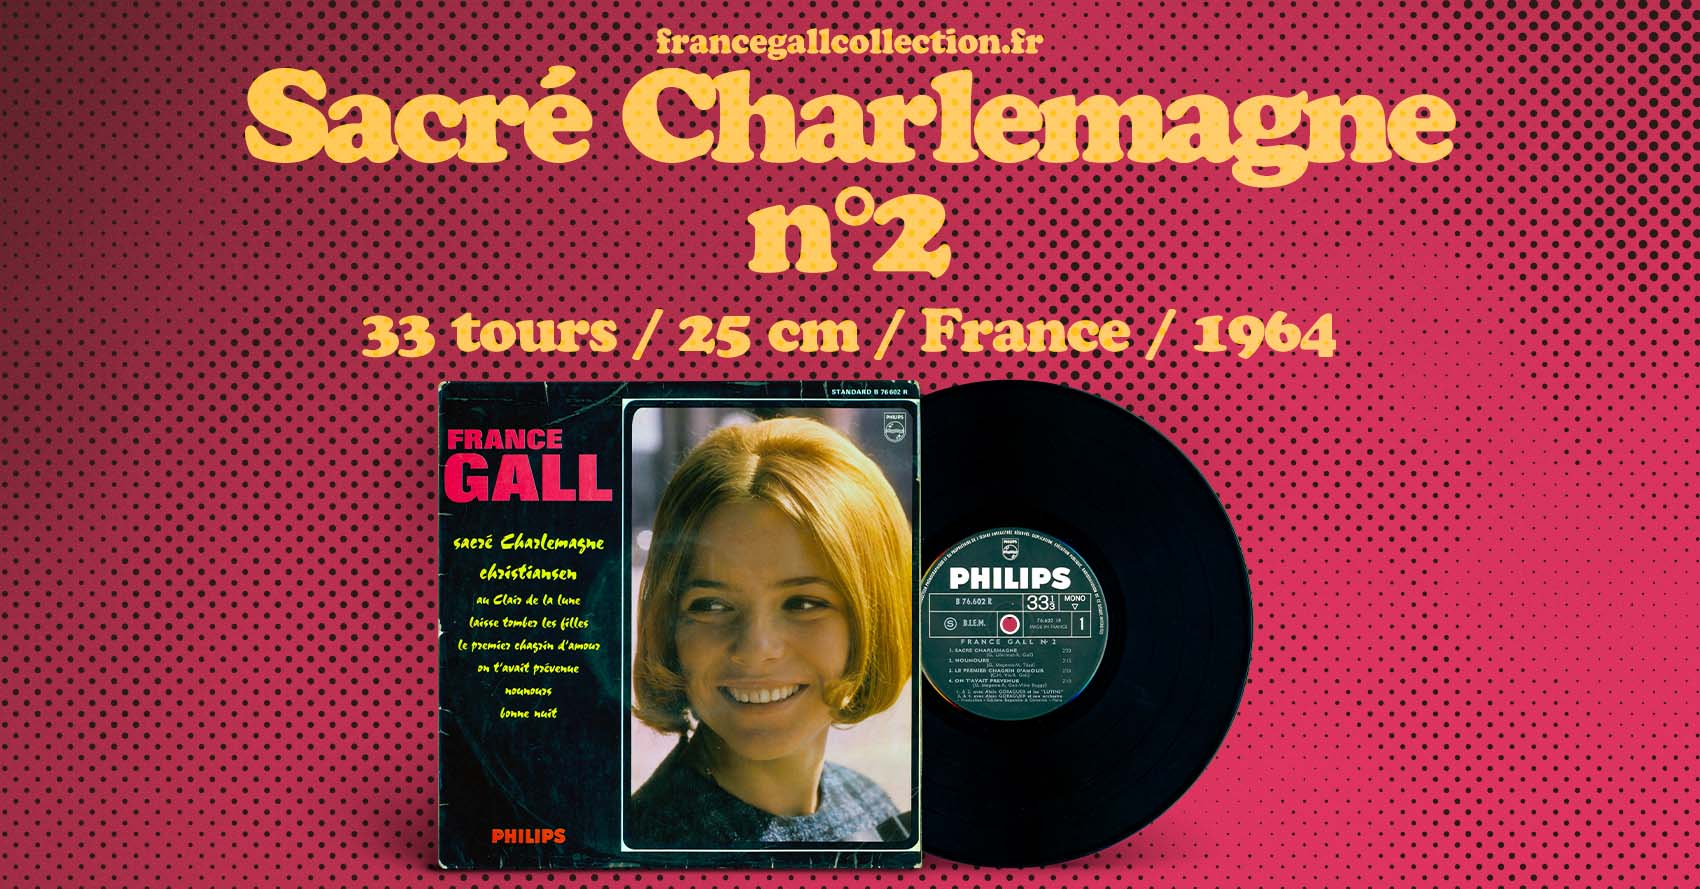 Sacré Charlemagne, appelé communément "N°2", est le second album sur vinyle de 8 titres de France Gall. C'est également la deuxième et dernière galette de 25 cm dans la carrière de France Gall.